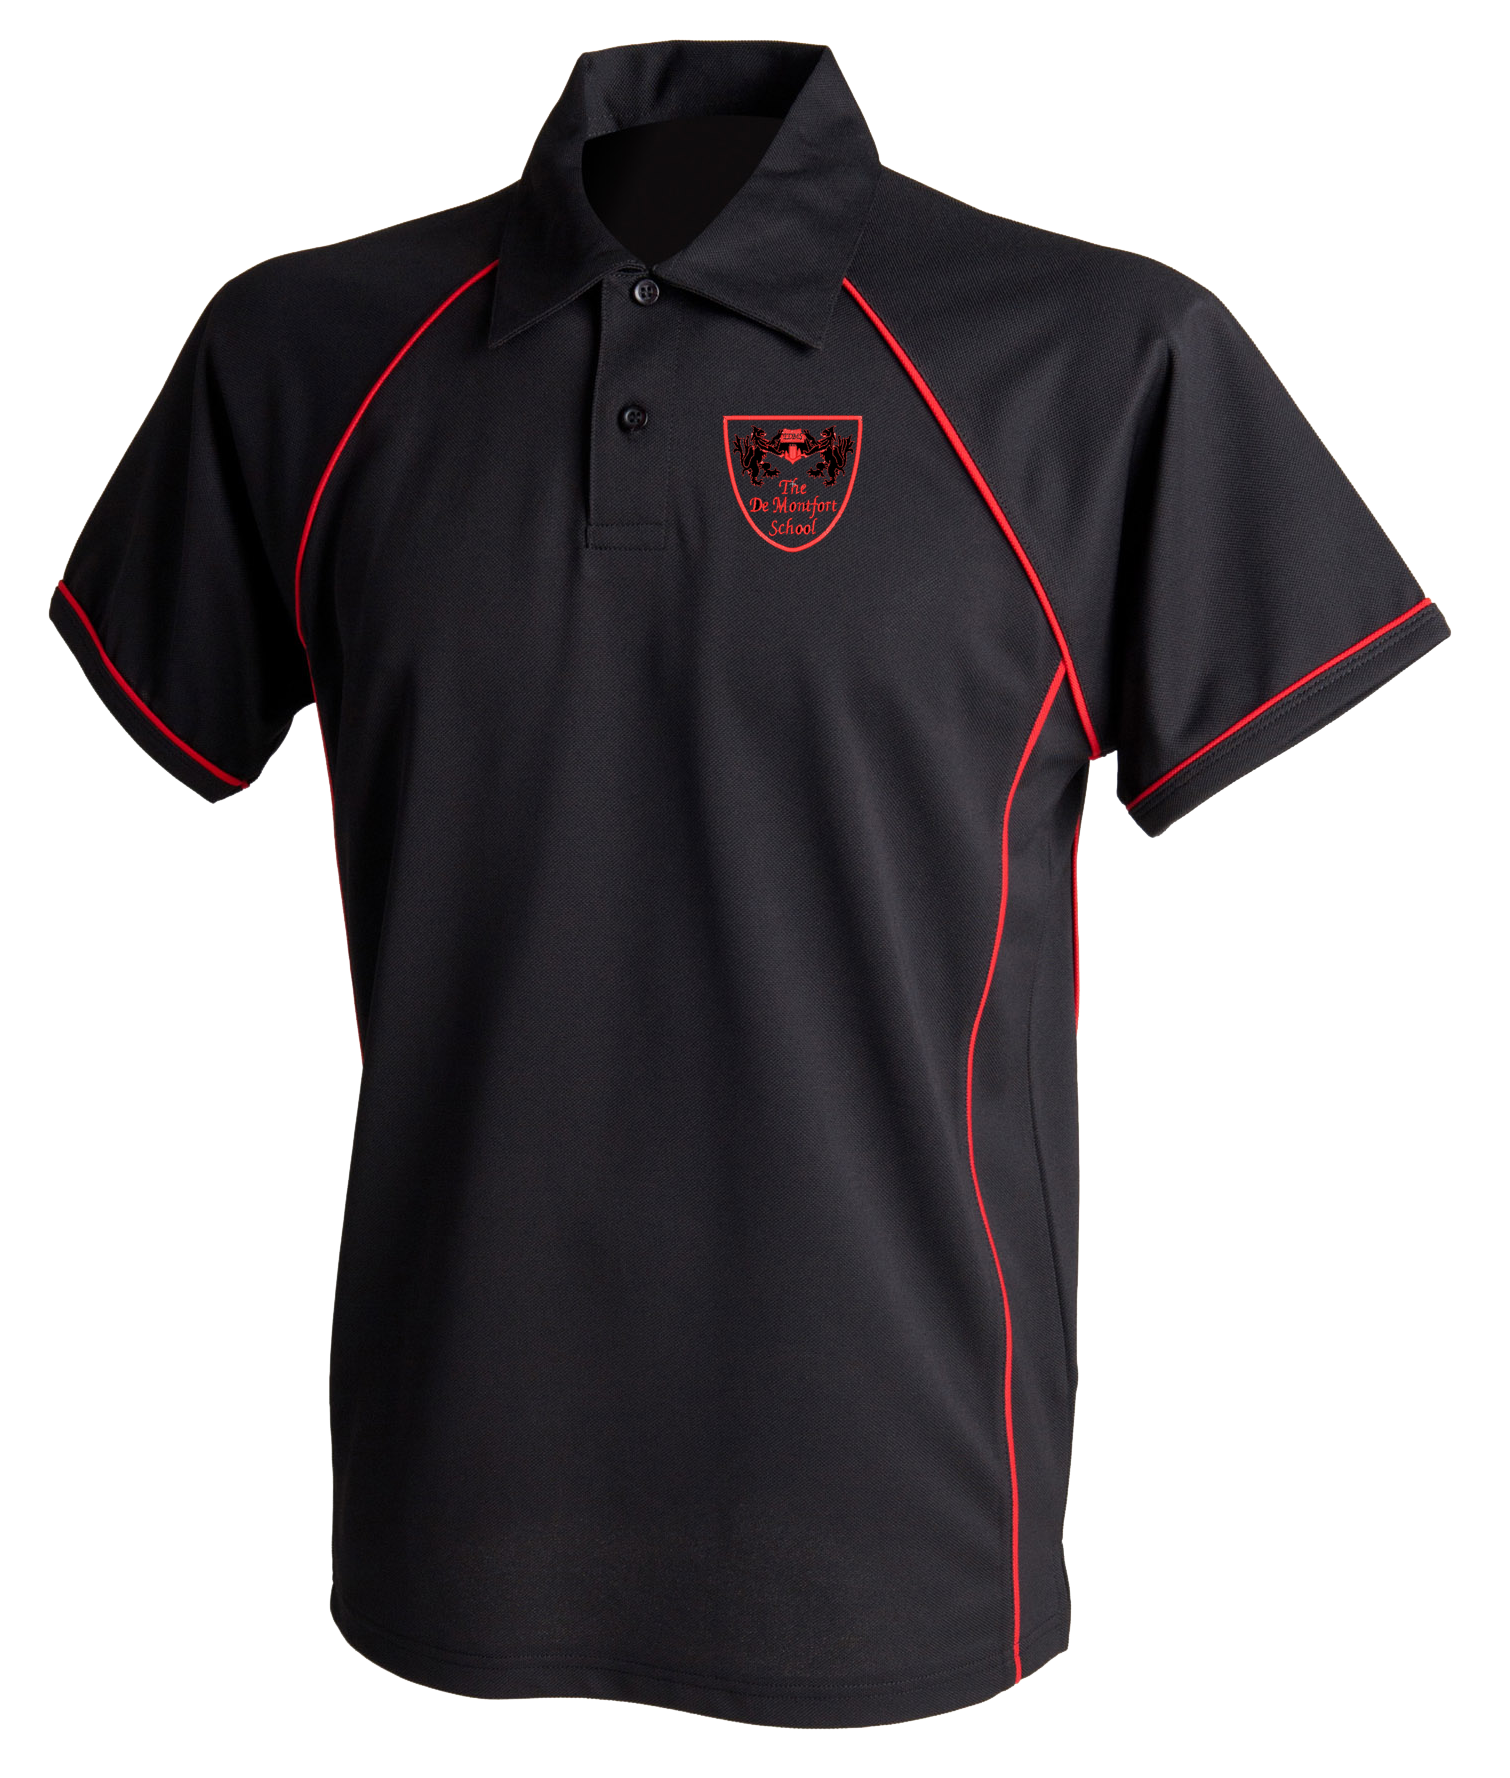 The De Montford School GCSE Black Sports Polo - The School Shop UK